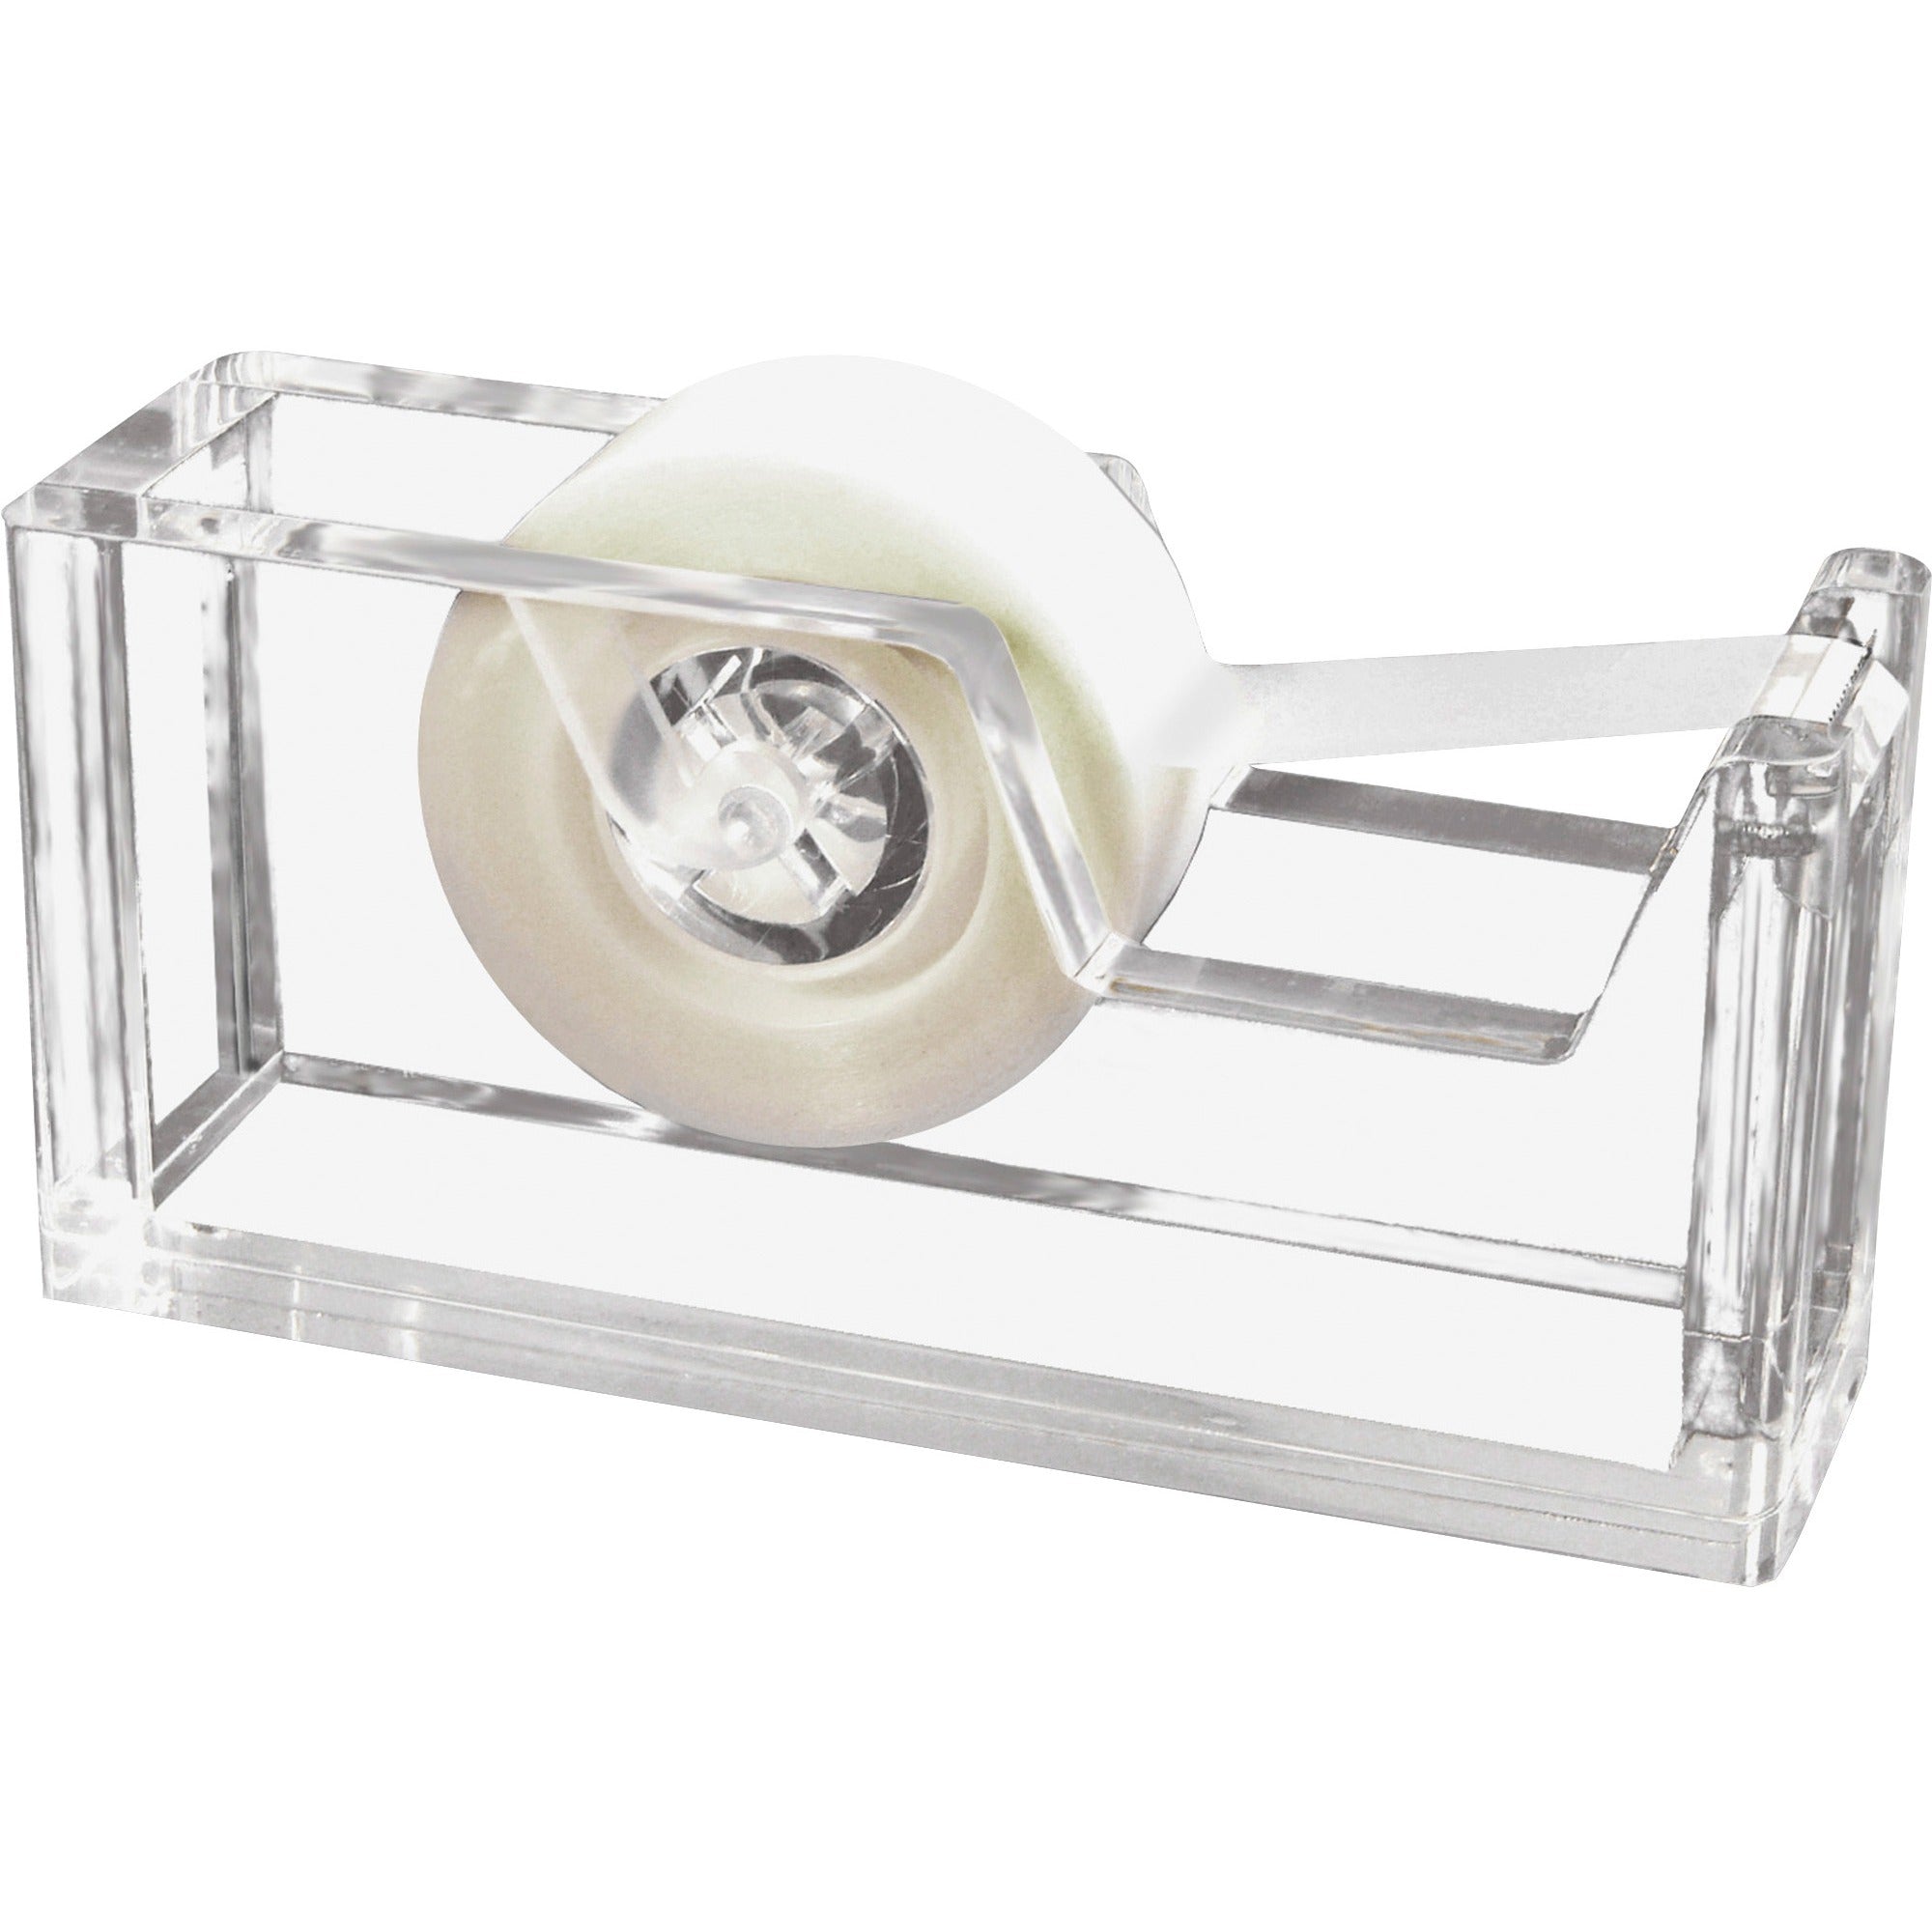 Kantek Acrylic Tape Dispenser - Holds Total 1 Tape(s) - Refillable - Non-skid Base - Clear - 1 Each